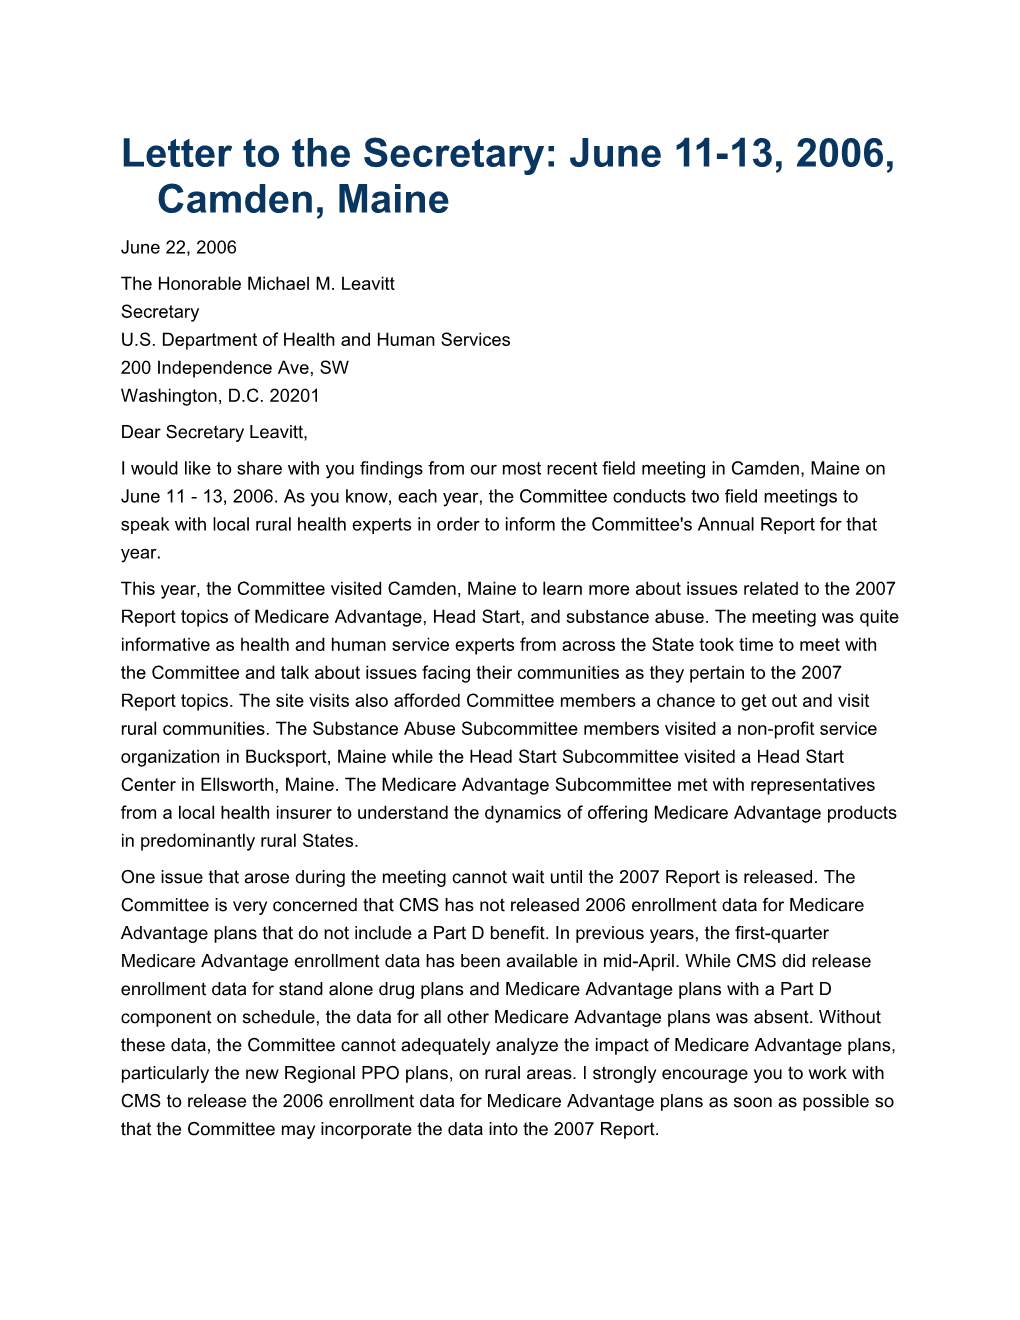 Letter to the Secretary: June 11-13, 2006, Camden, Maine